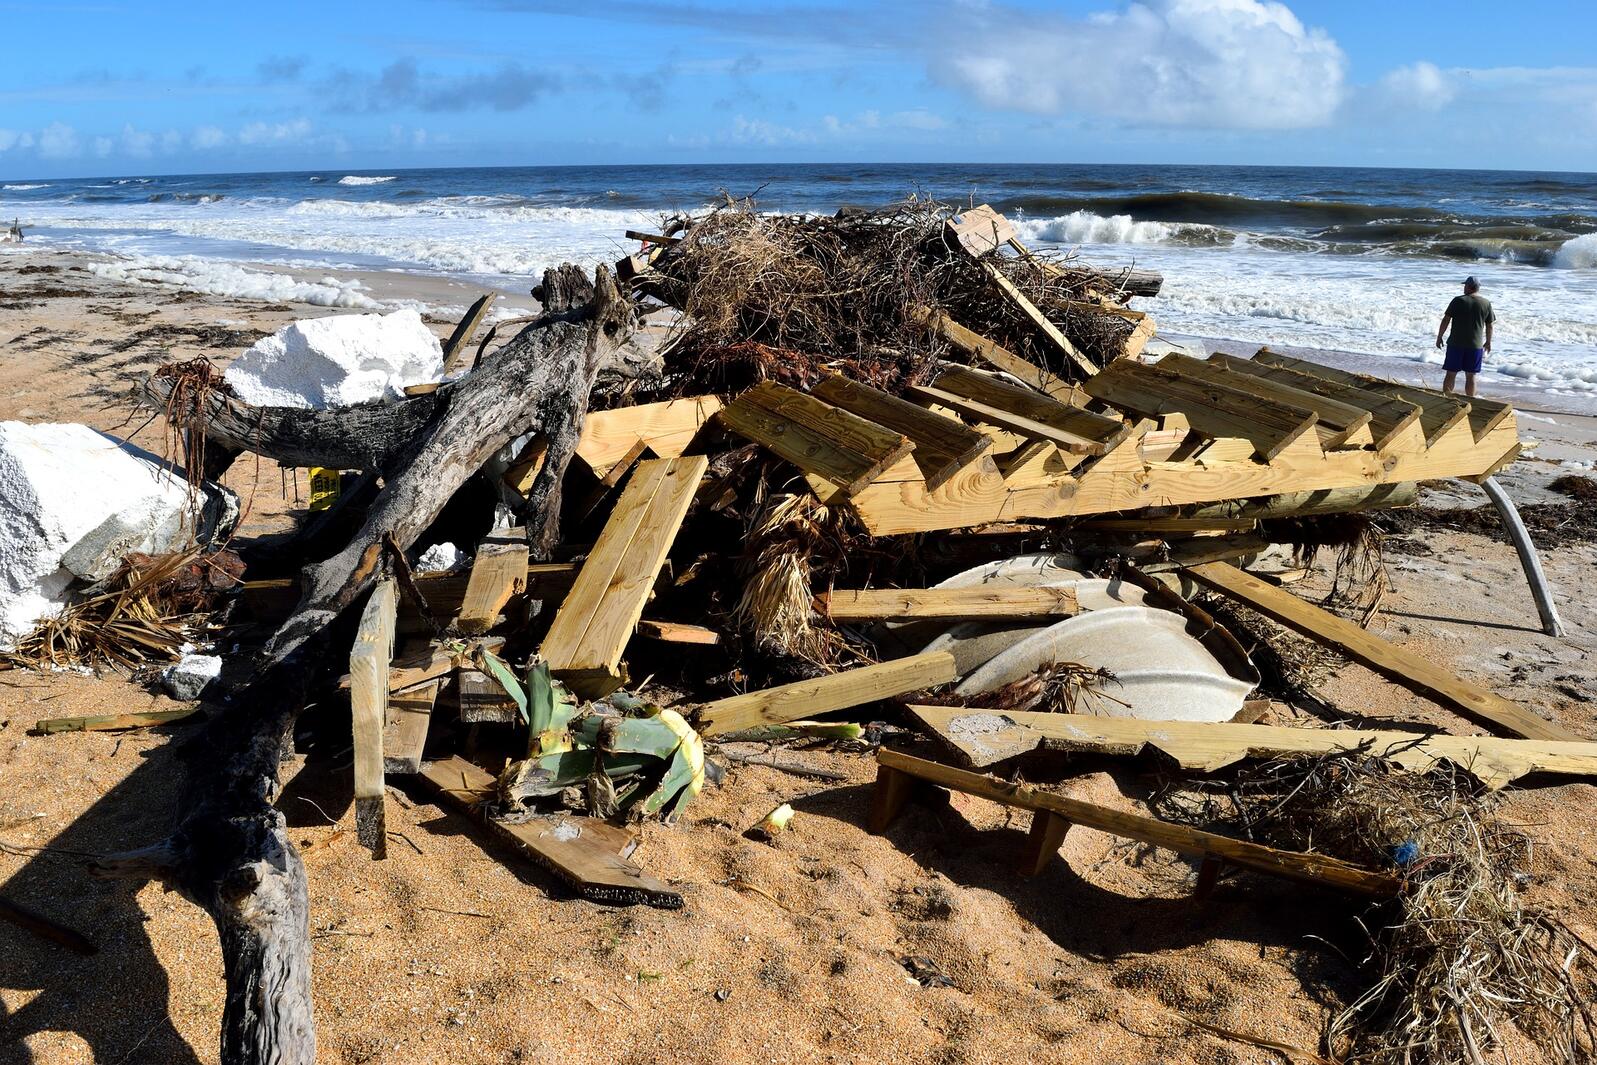 Hurricane debris piled up on a beach.